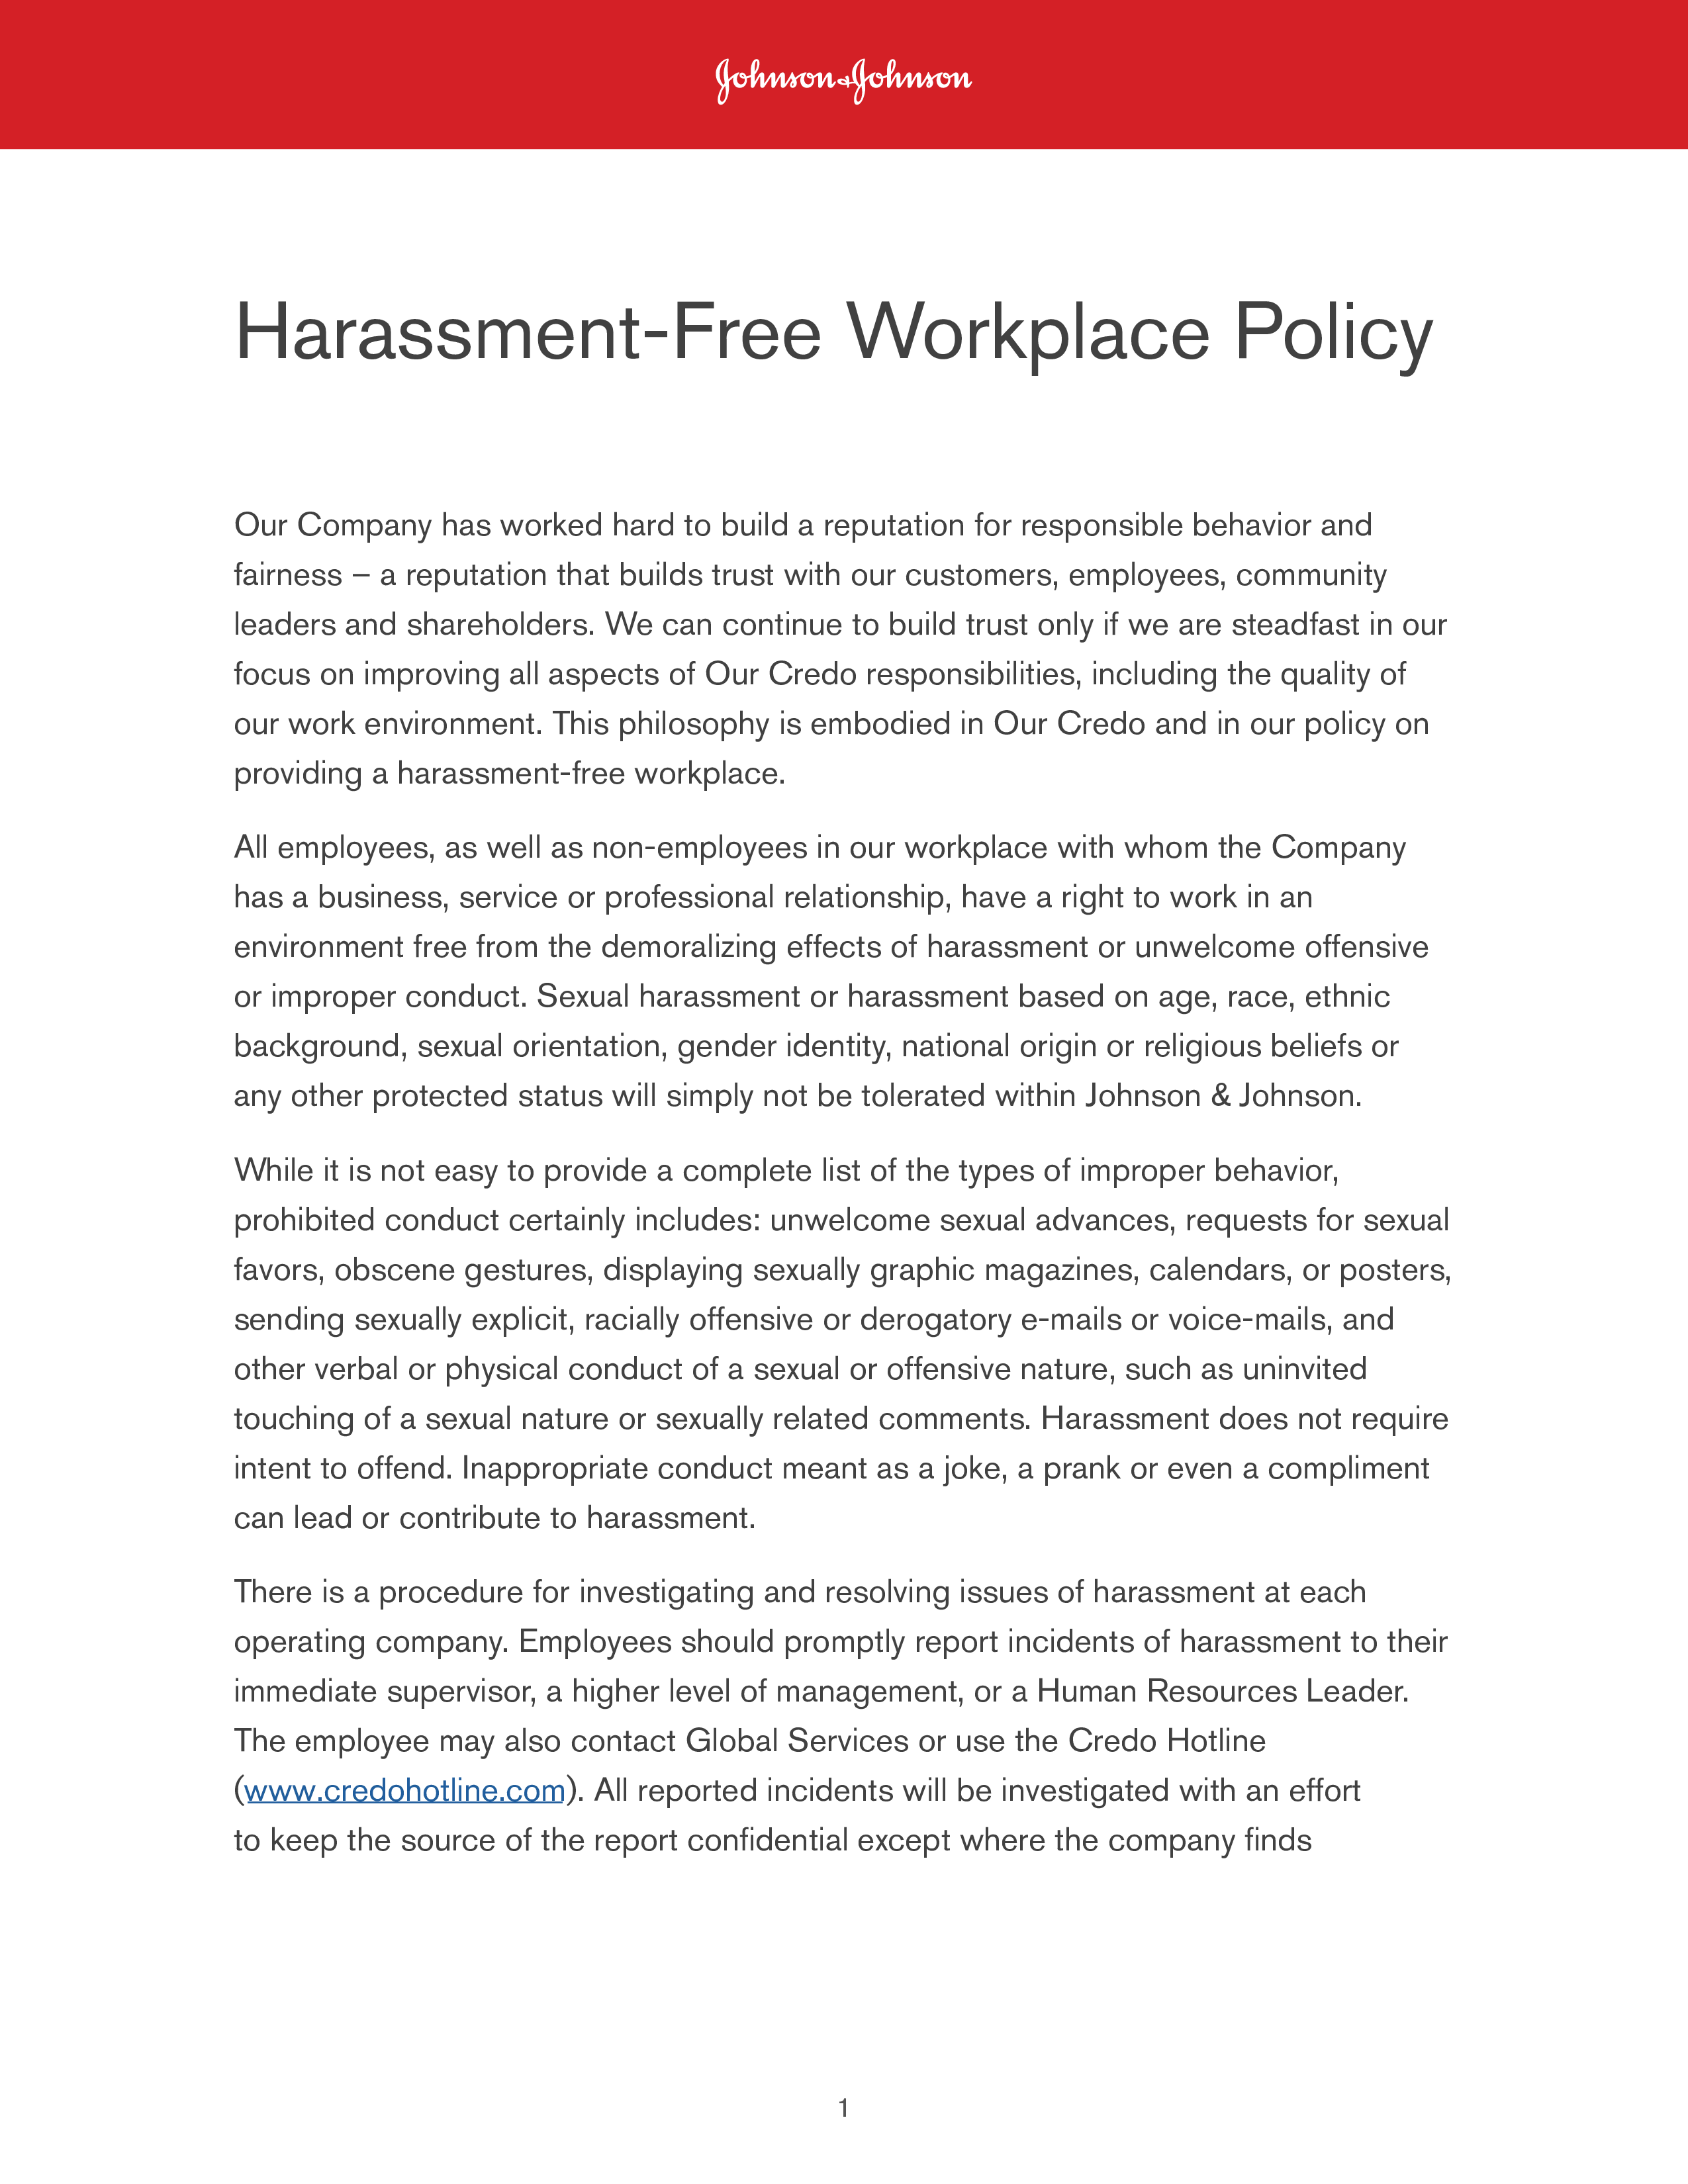 harassment policy plantilla imagen principal